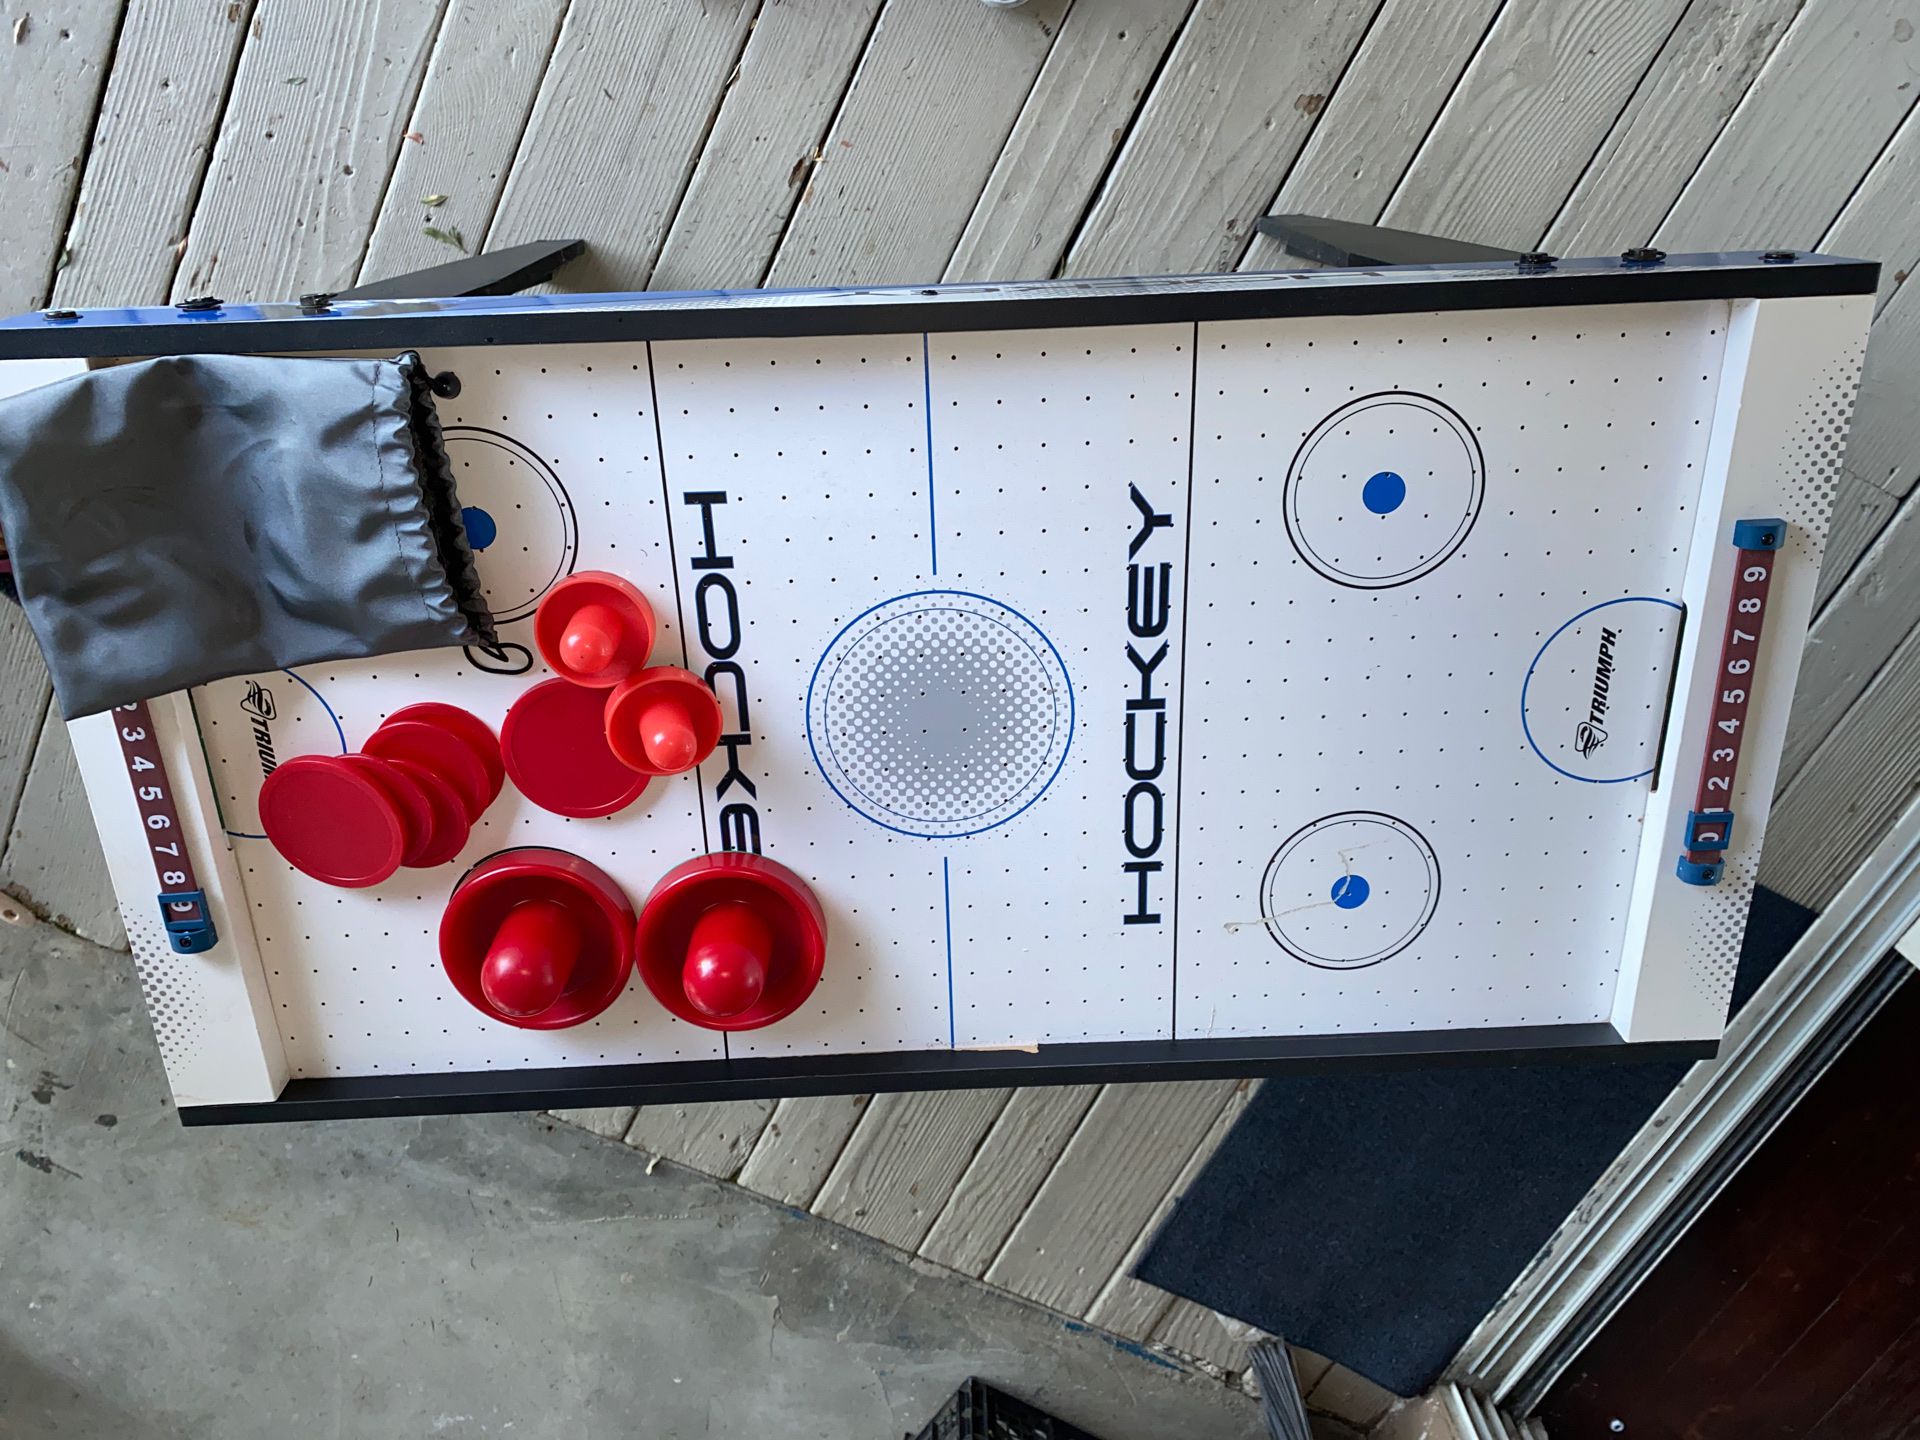 Portable air hockey table